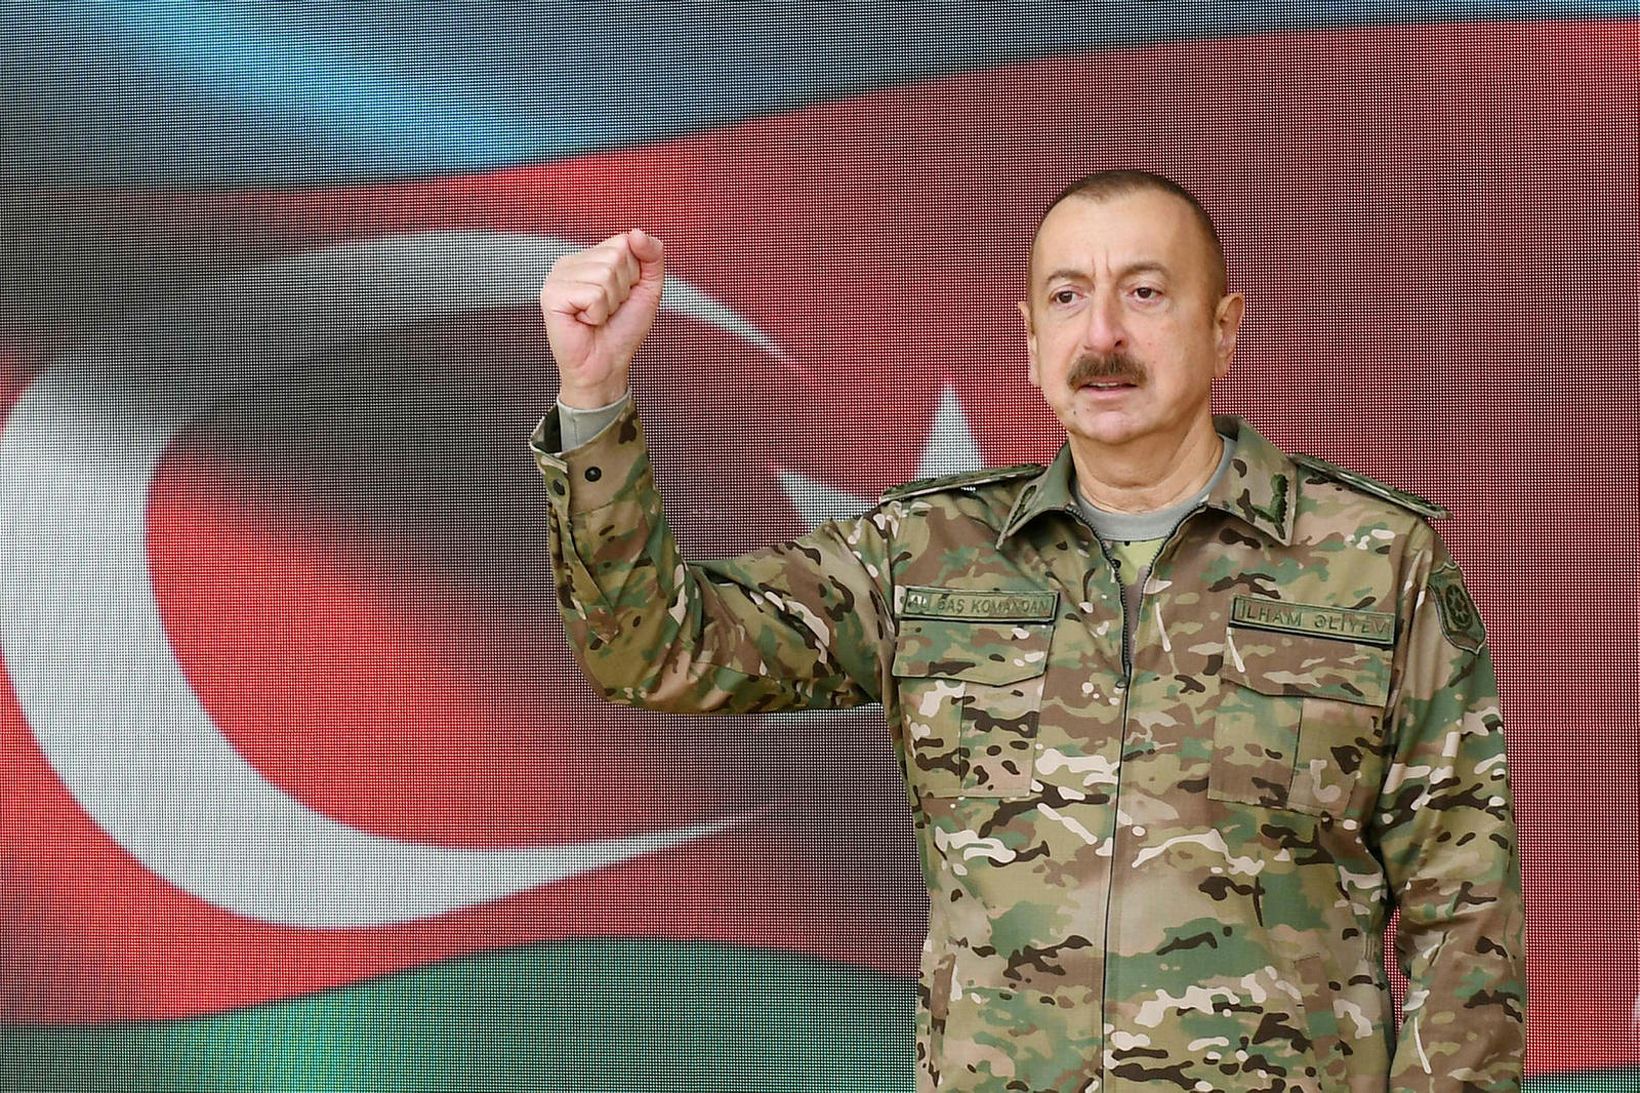 Ilham Aliyev, forseti Aserbaídsjan, í sjónvarpsávarpi sínu í dag.